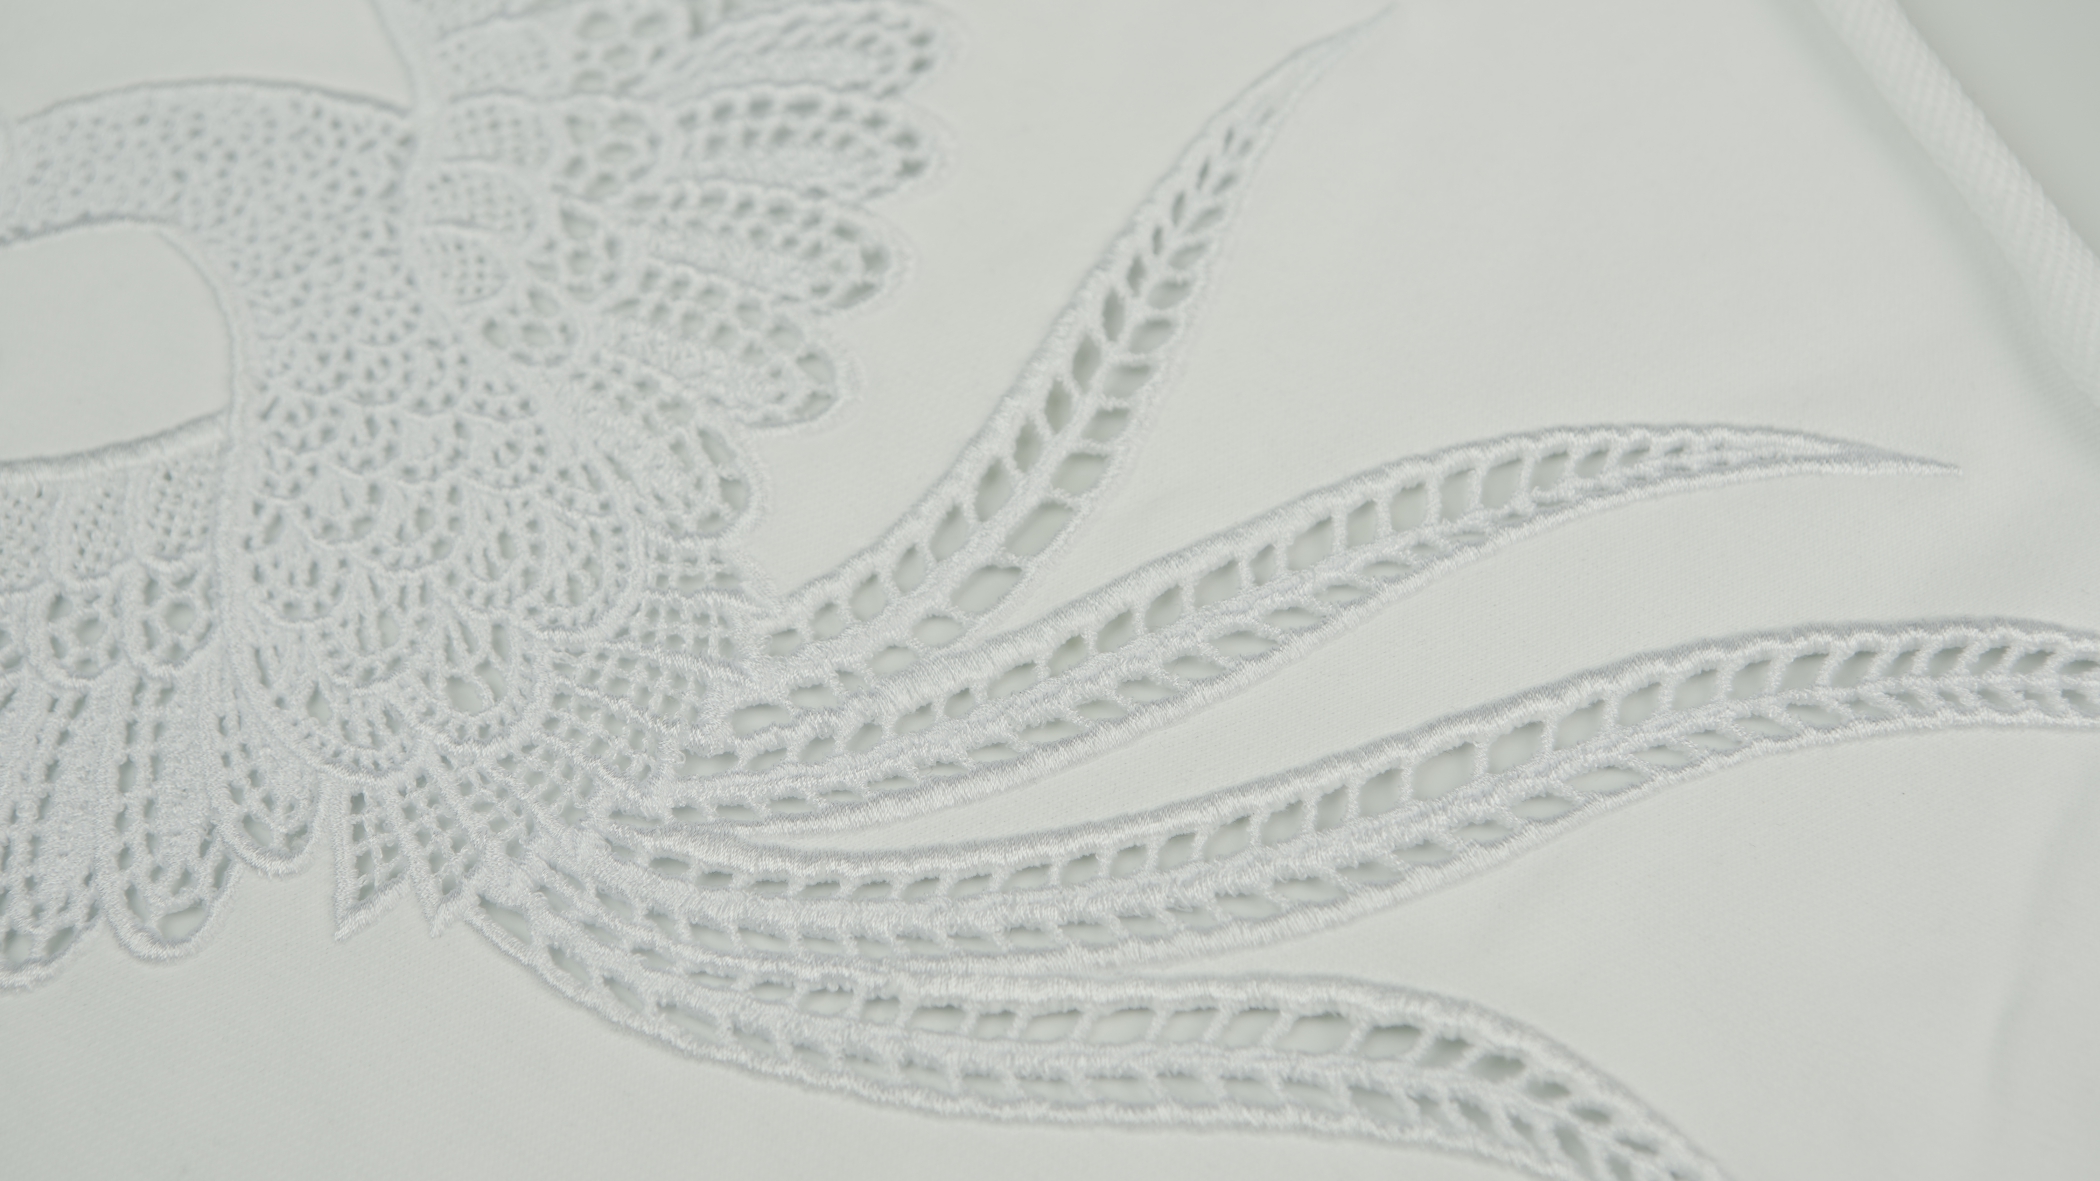 Bordado Boring ou imitação ponto inglês em branco sobre fundo branco formando um desenho de um pássaro